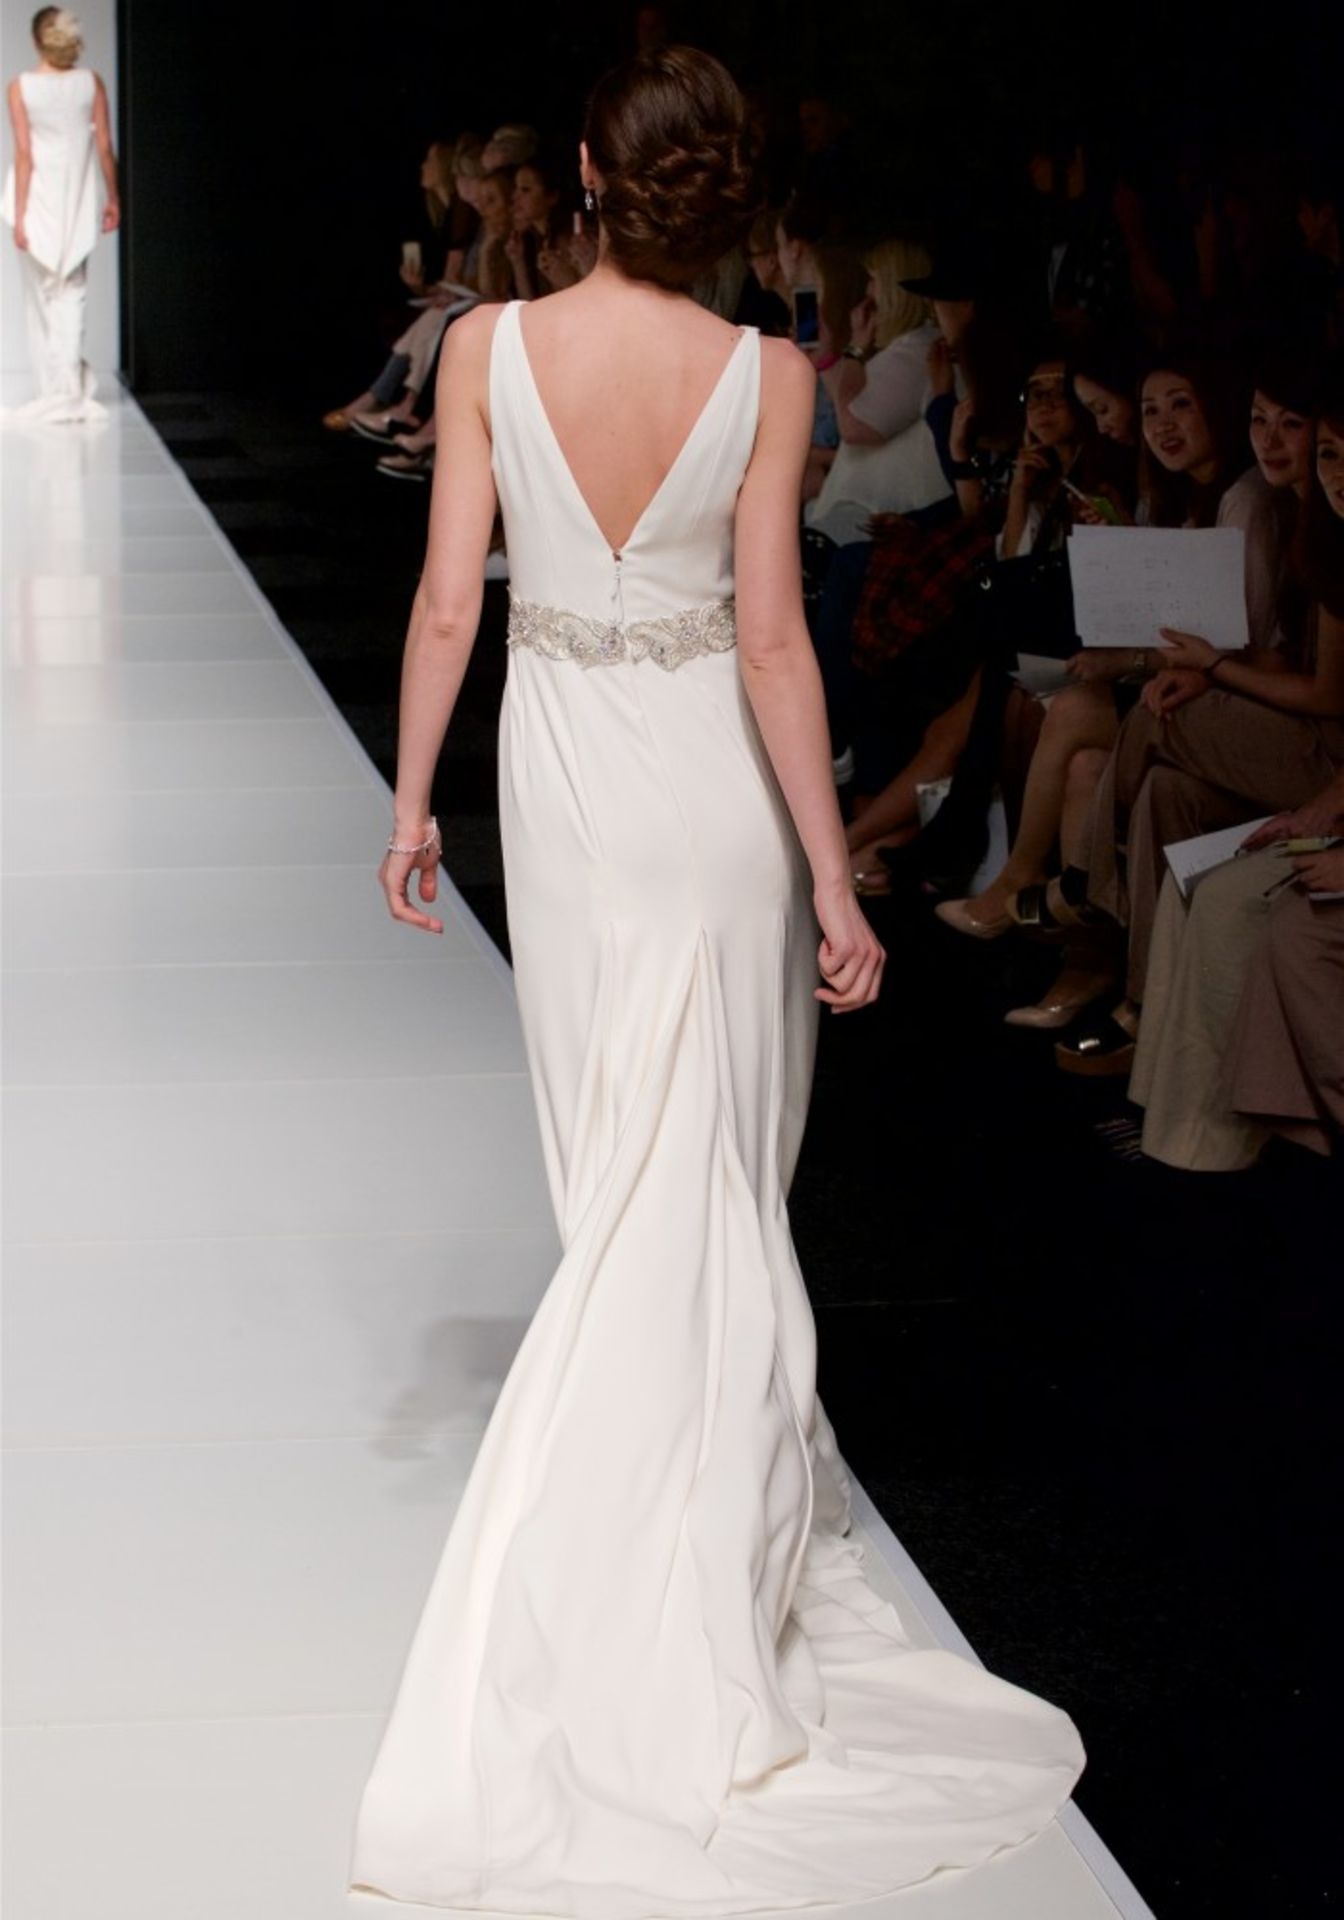 1 x ALAN HANNAH 'Jessica' Designer Crepe Wedding Dress Bridal Gown, With Embellished Belt - Made - Image 12 of 14